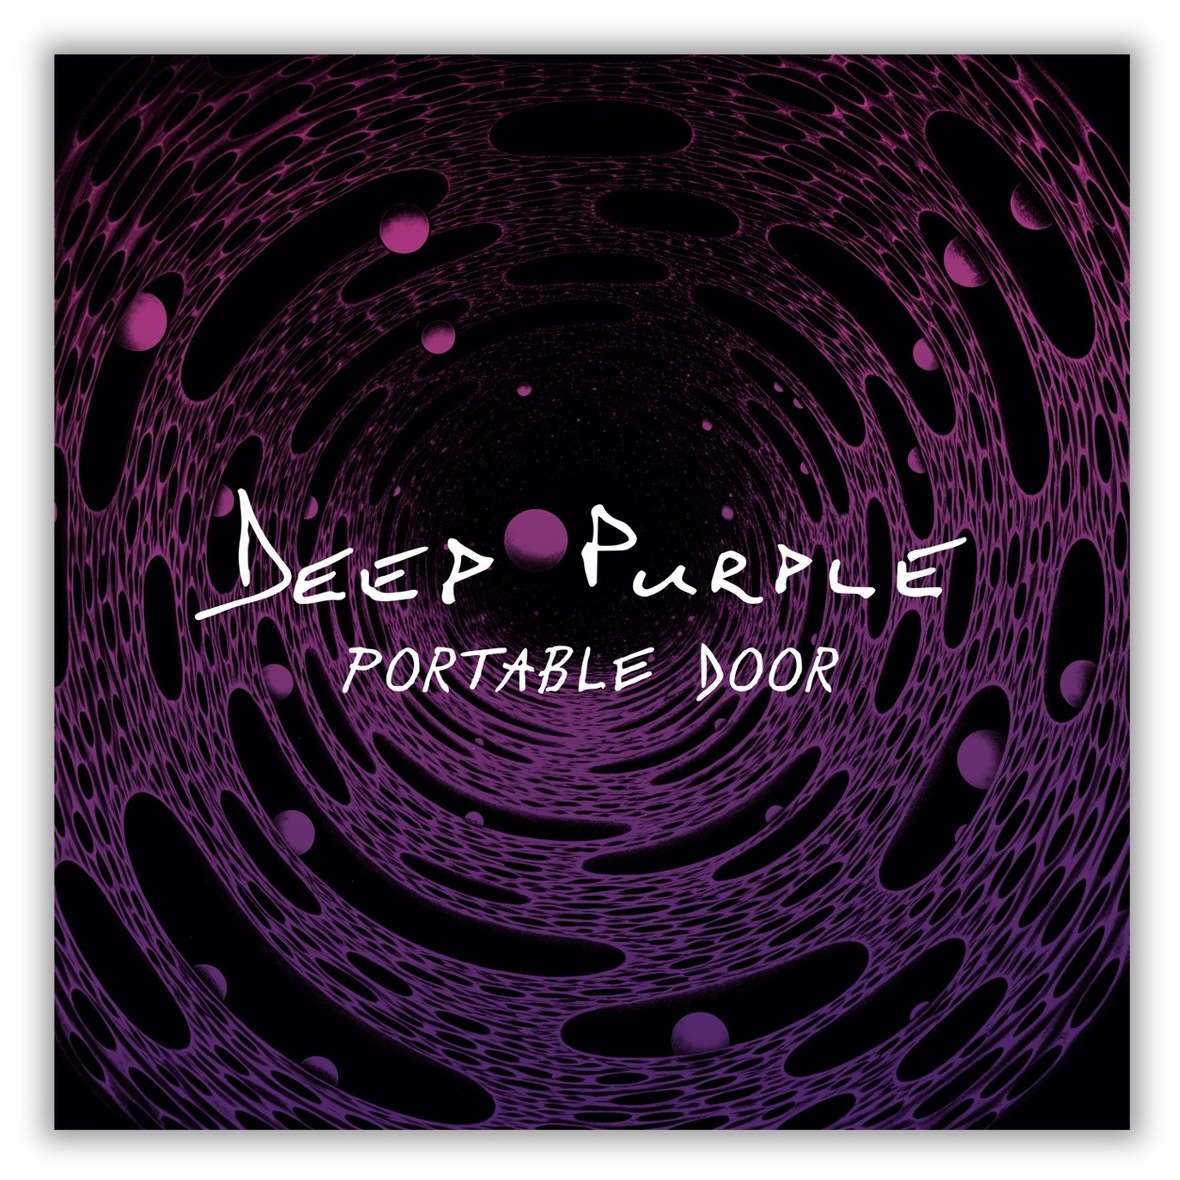 Deep Purple Open 'Portable Door' Video To New Album